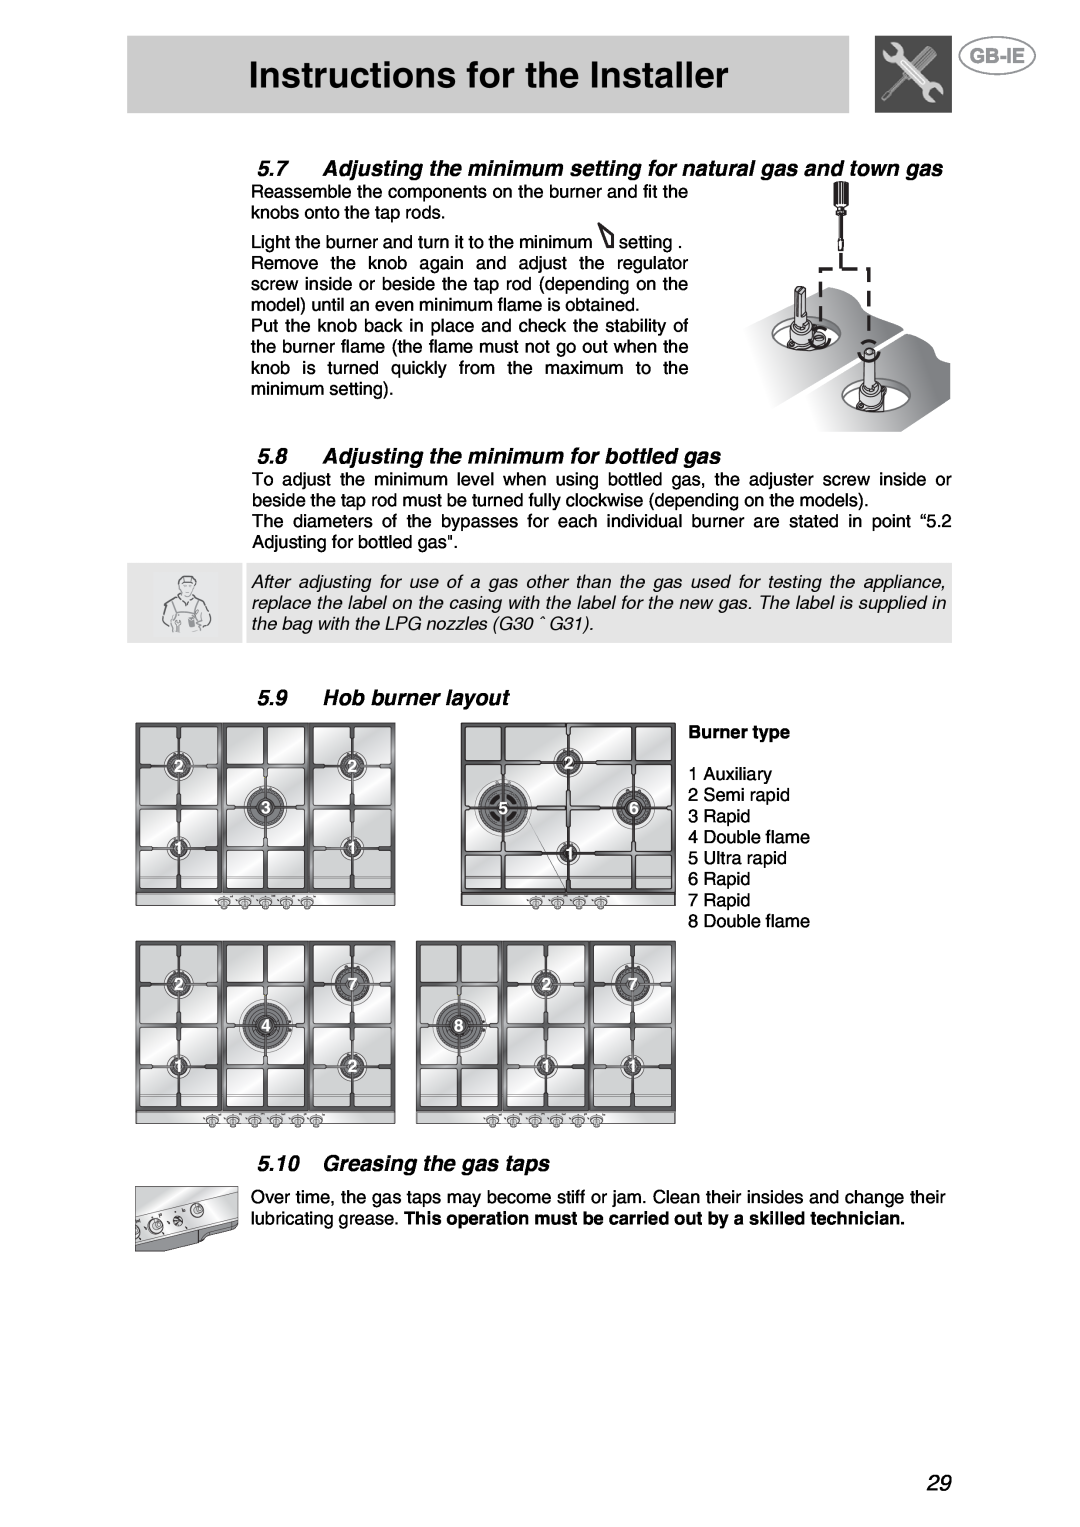 Smeg GKL64-3 Instructions for the Installer, 5.8Adjusting the minimum for bottled gas, 5.9Hob burner layout, Burner type 